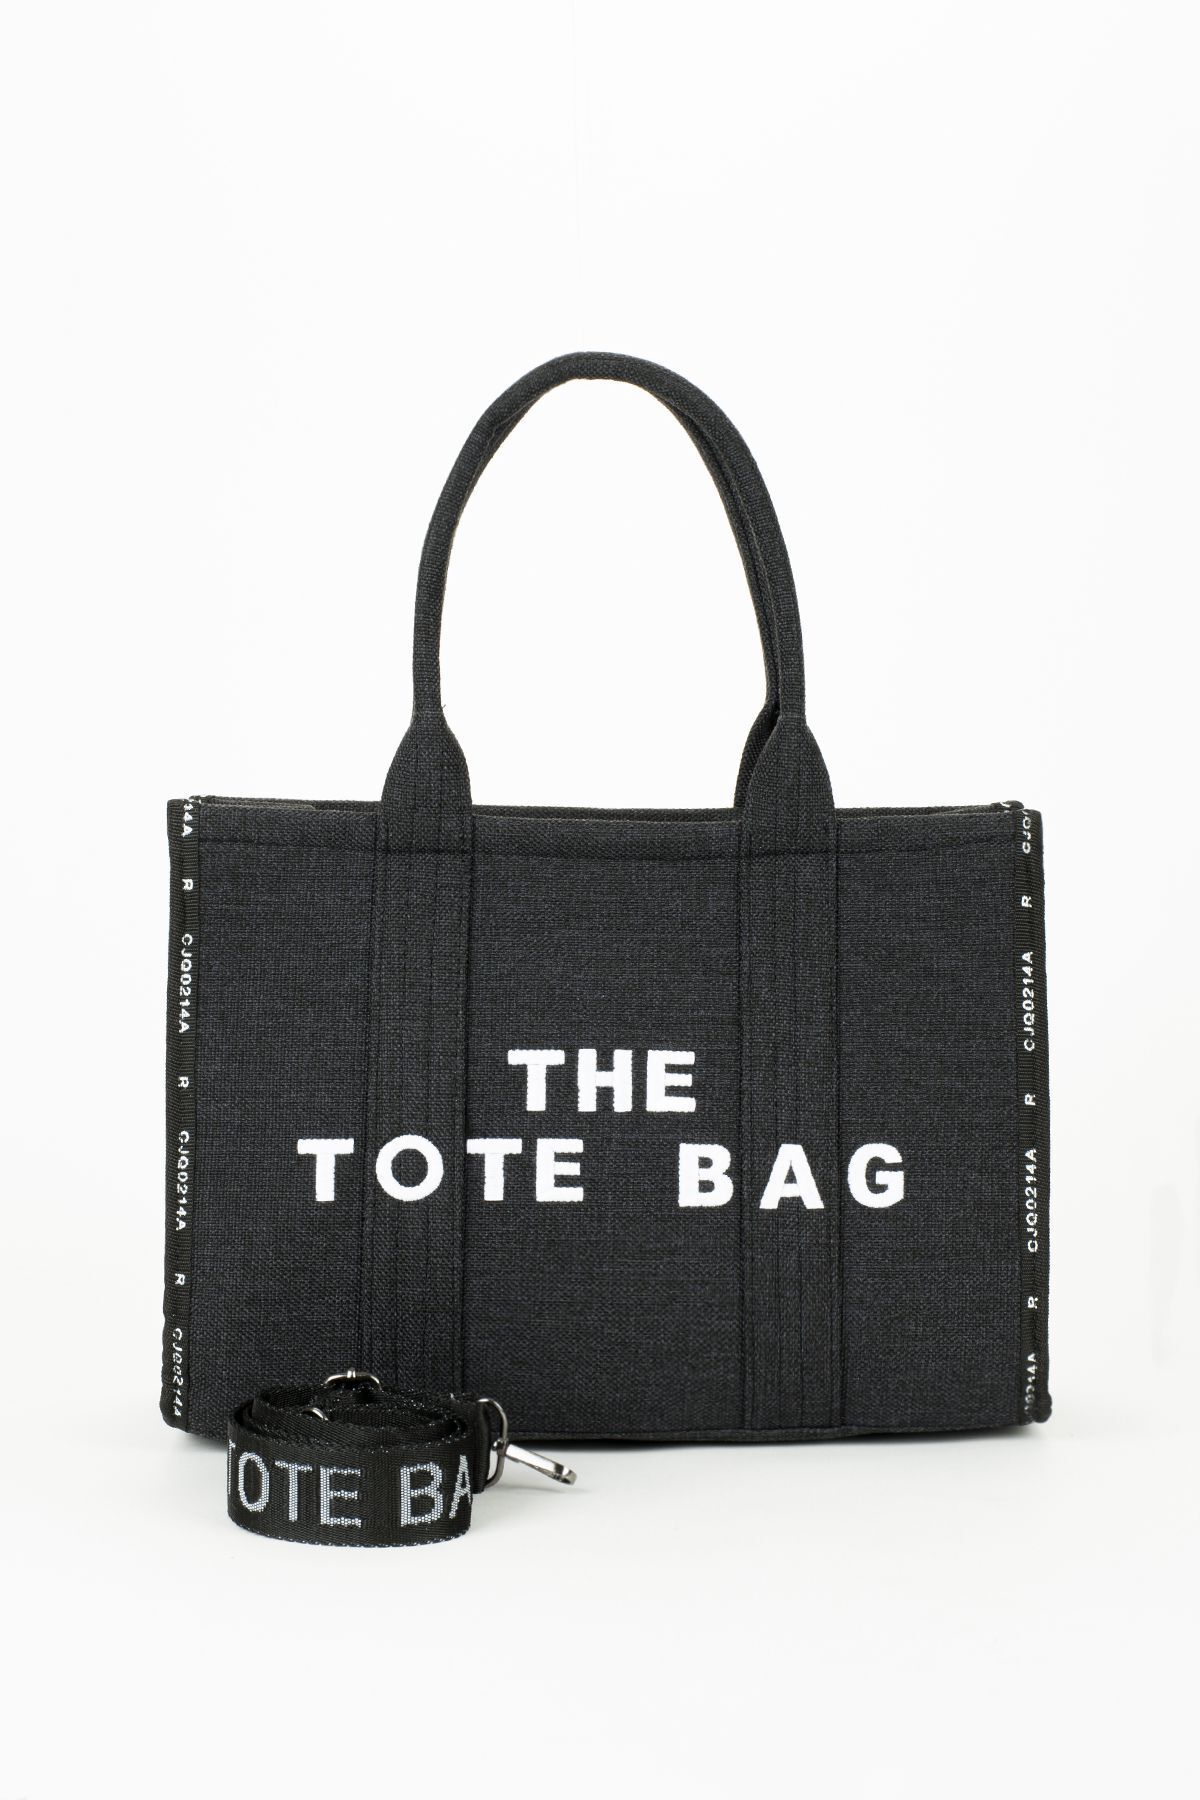 BAGzy New The Tote Bag Orijinal Kalıp Kadın El Ve Omuz Çantası